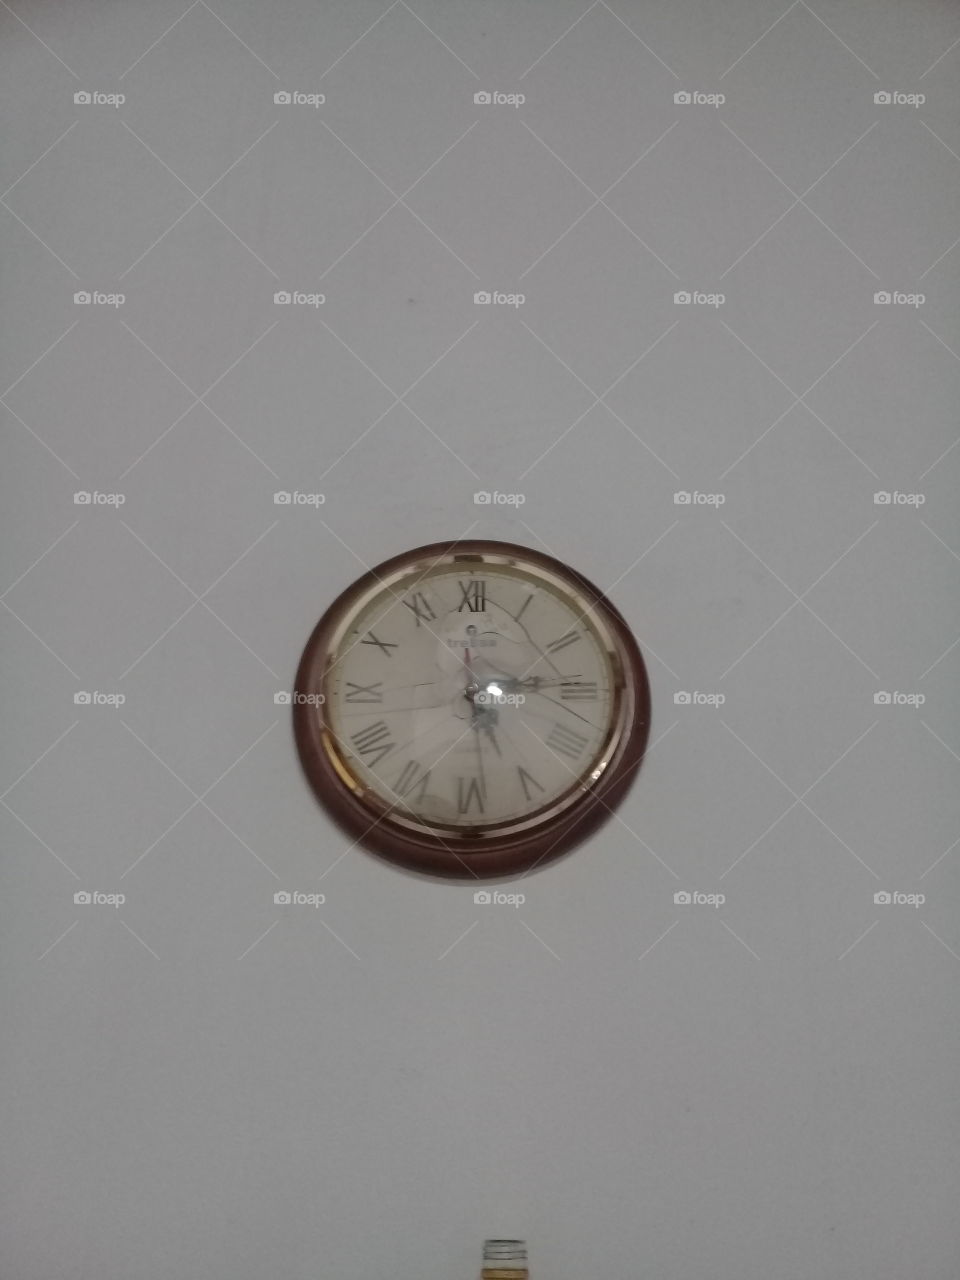 antiguo reloj de pared con marco de madera lustrada y agujas de metal, colgado sobre pared de cemento pintada de blanco